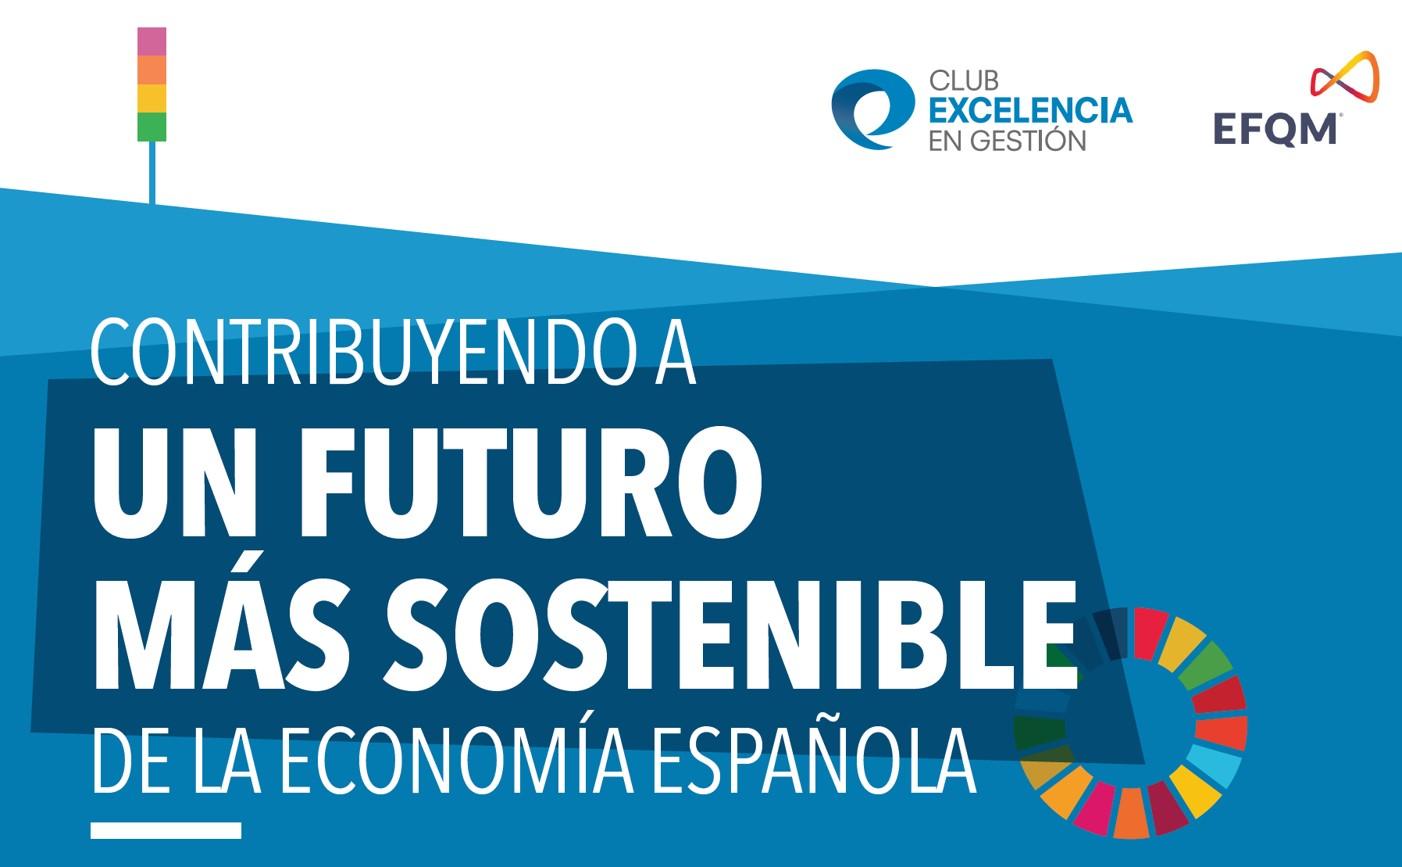 Contribuyendo a un futuro más sostenible de la economía española